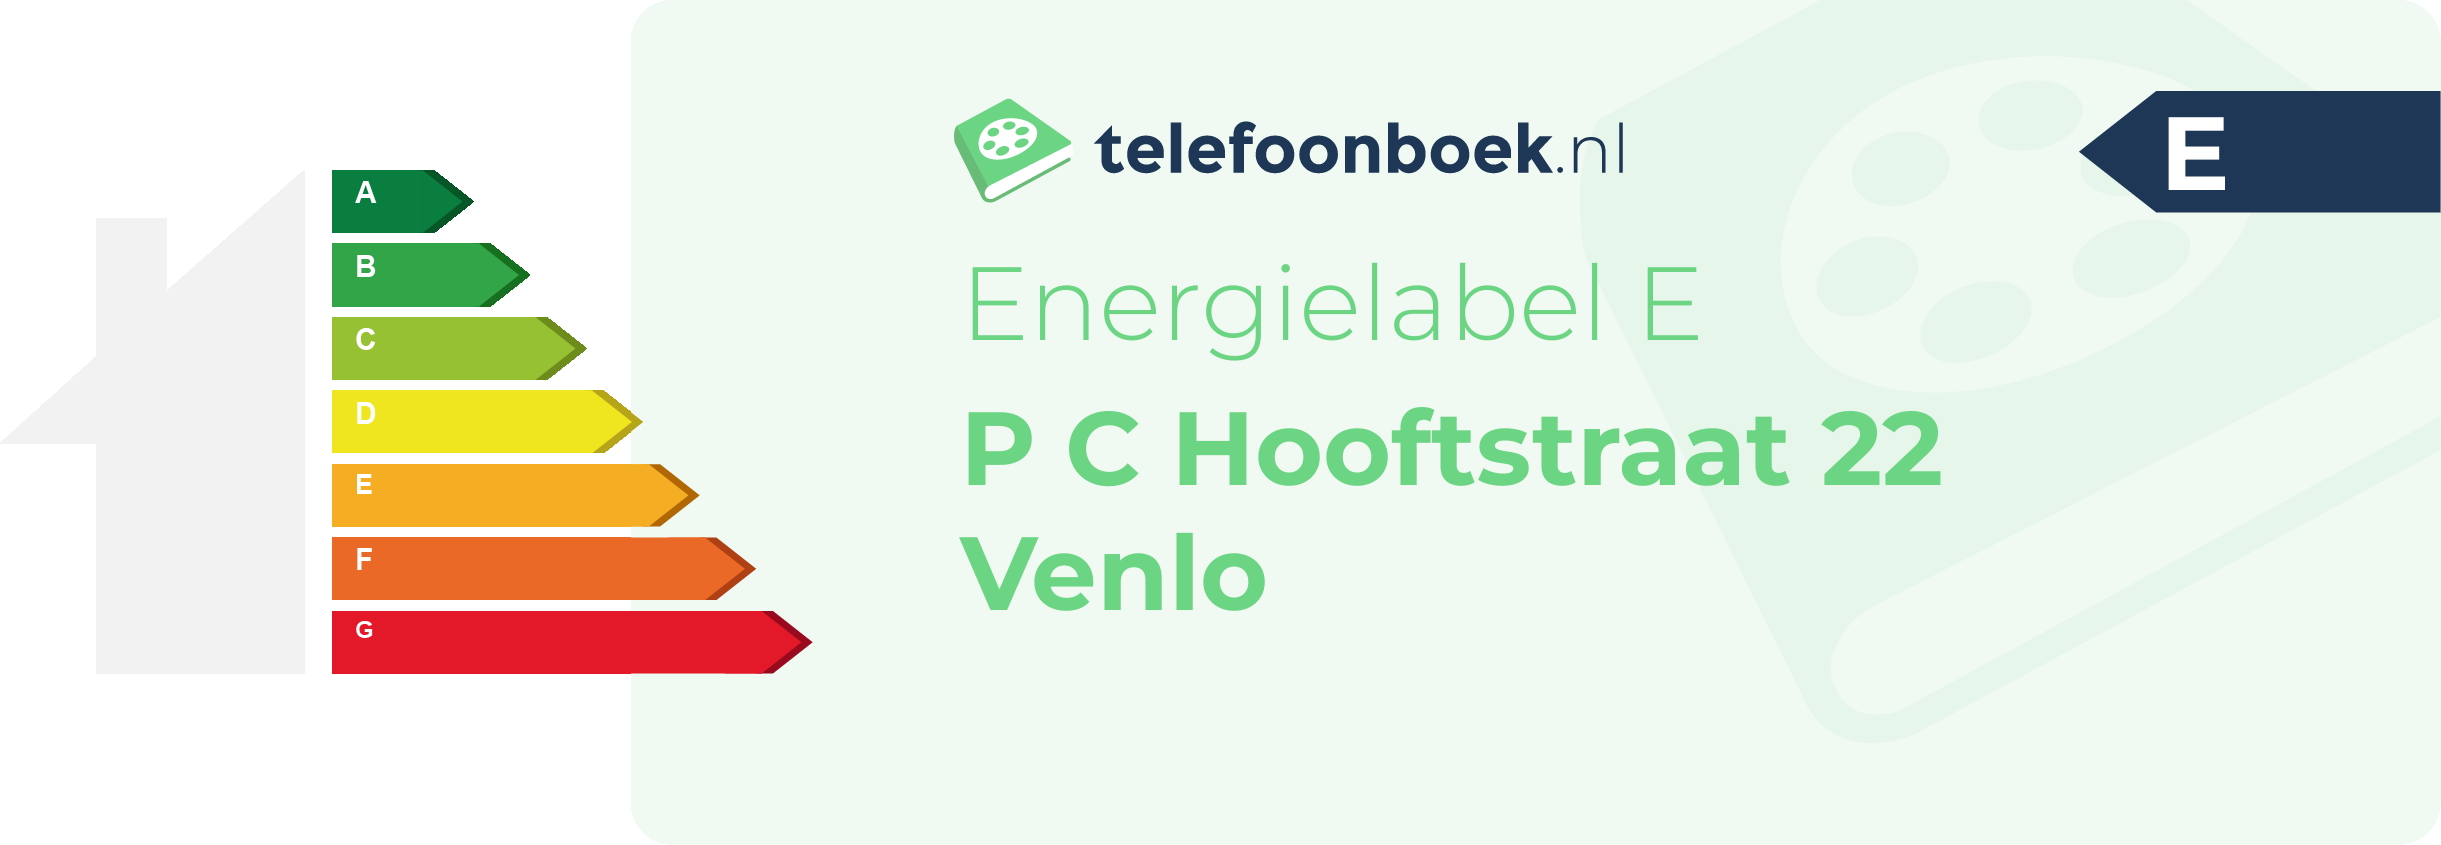 Energielabel P C Hooftstraat 22 Venlo